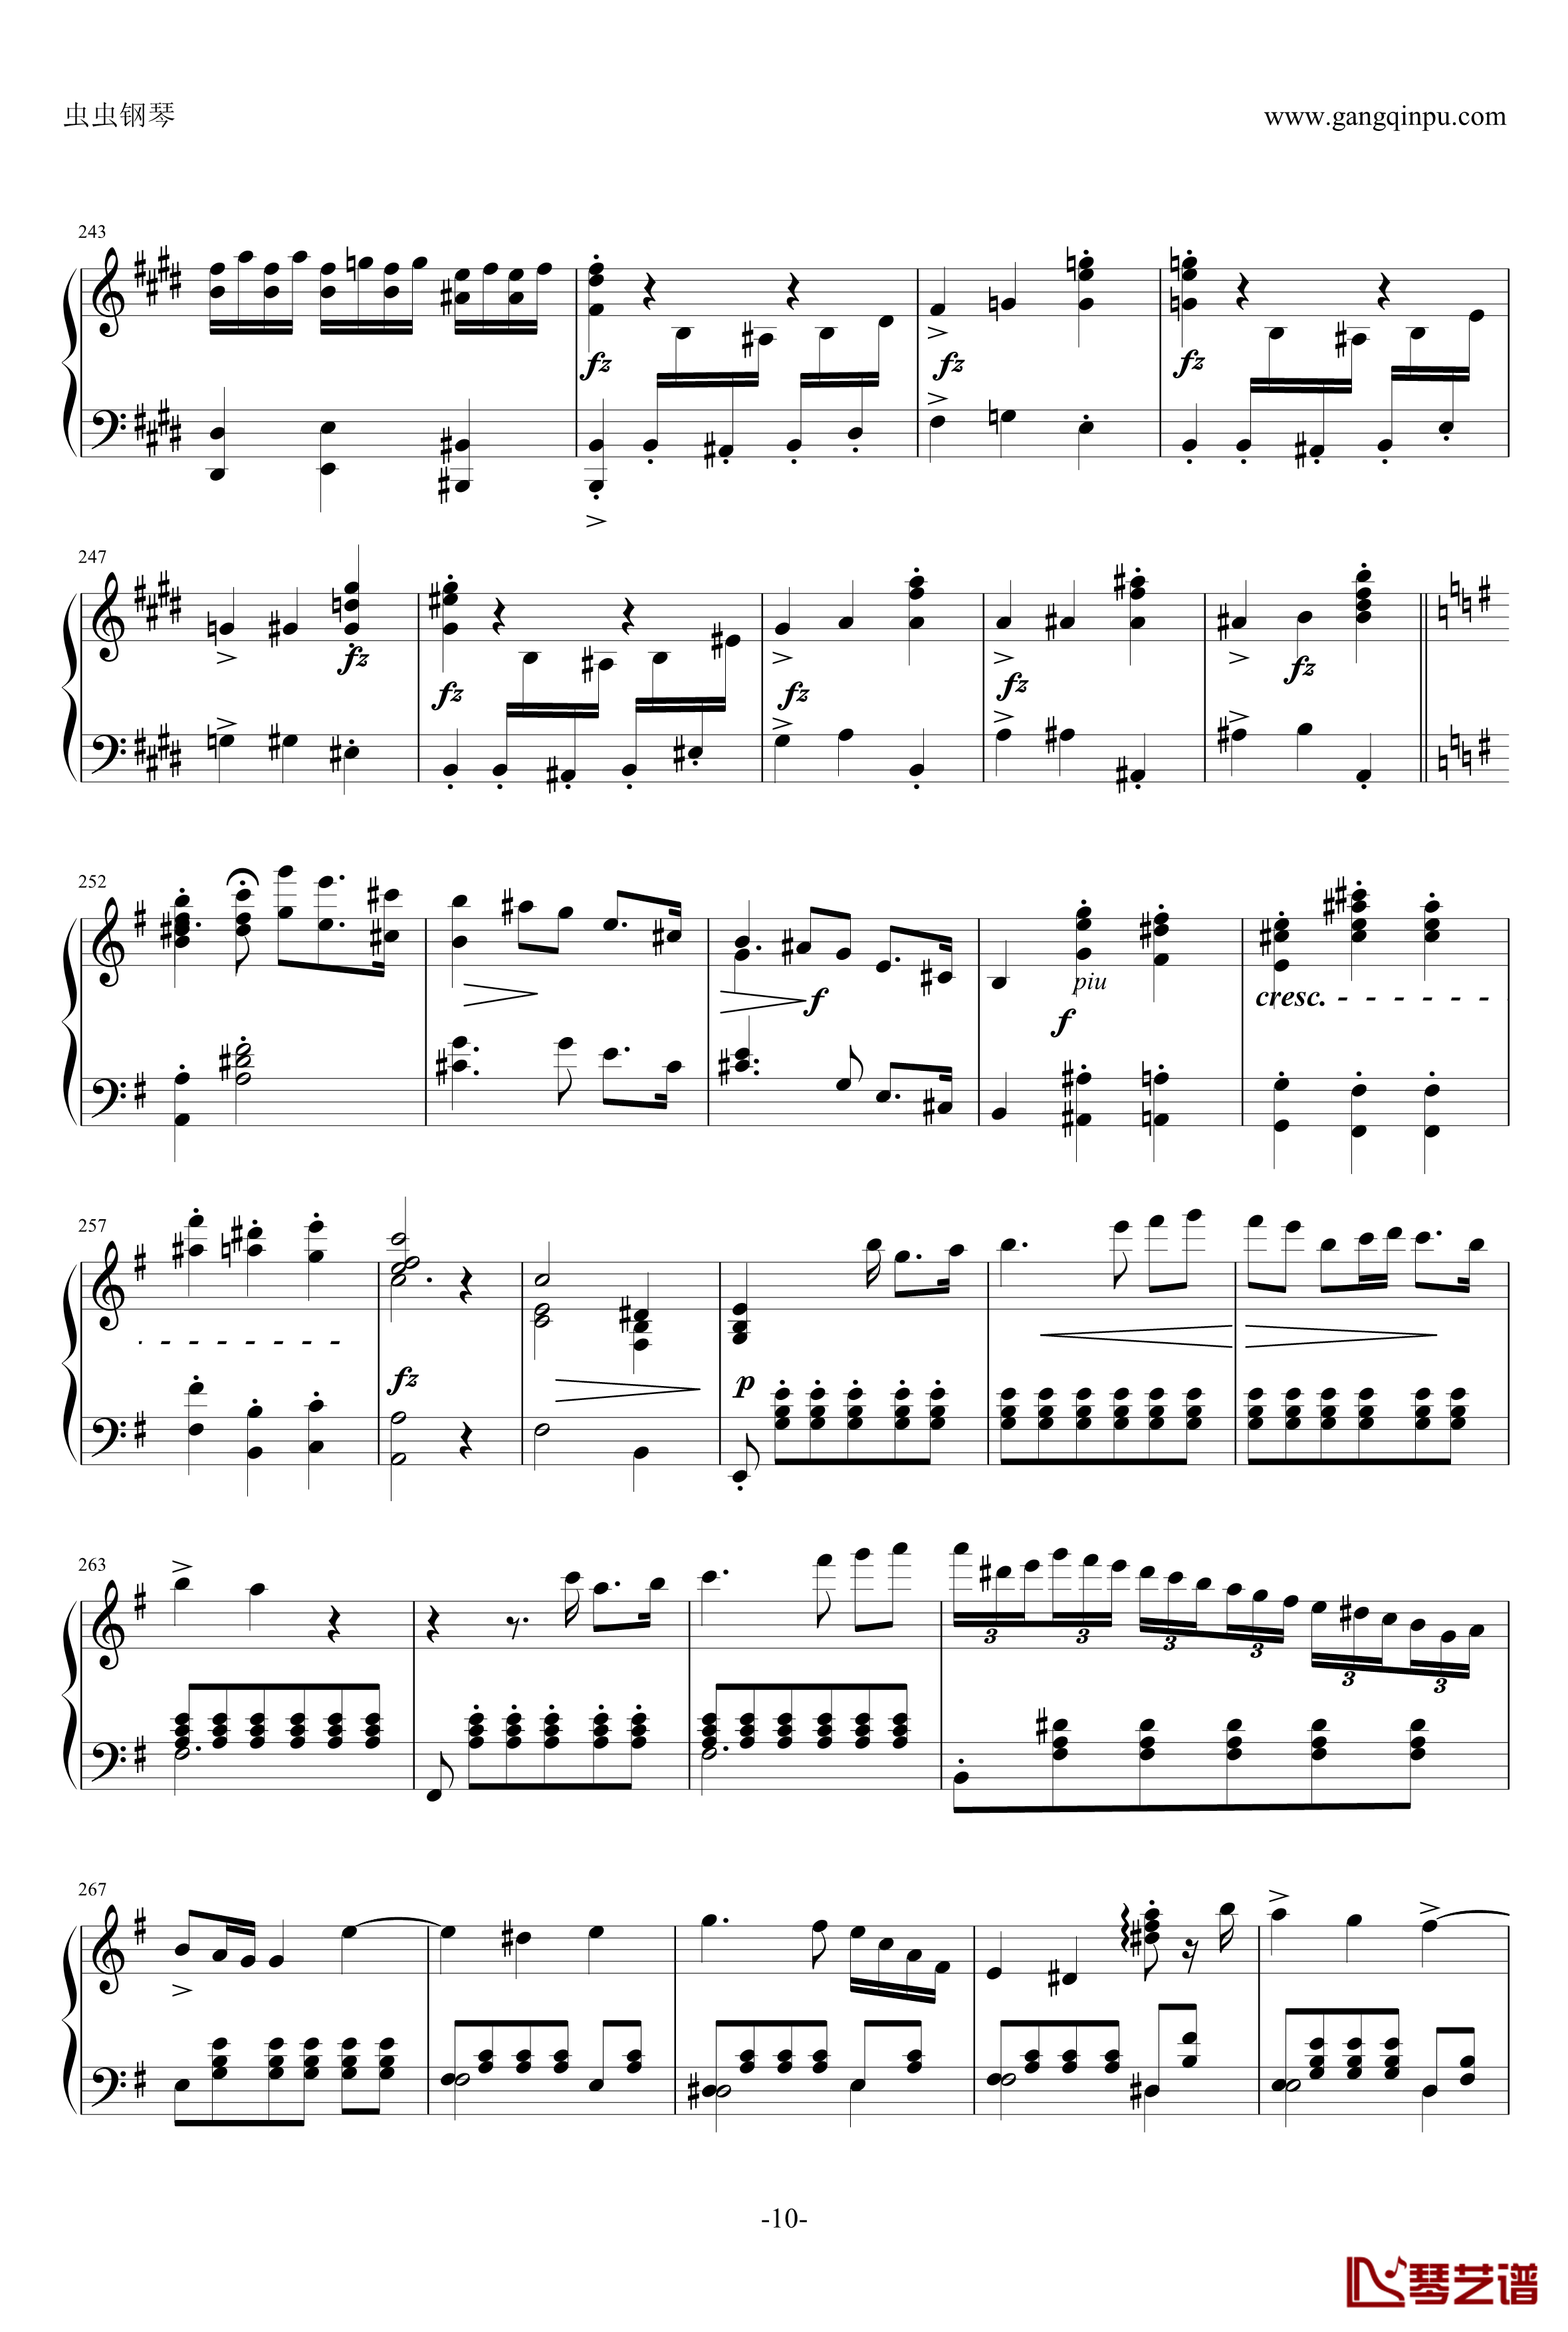 e小调钢琴协奏曲钢琴谱-乐之琴简易钢琴版-肖邦-chopin